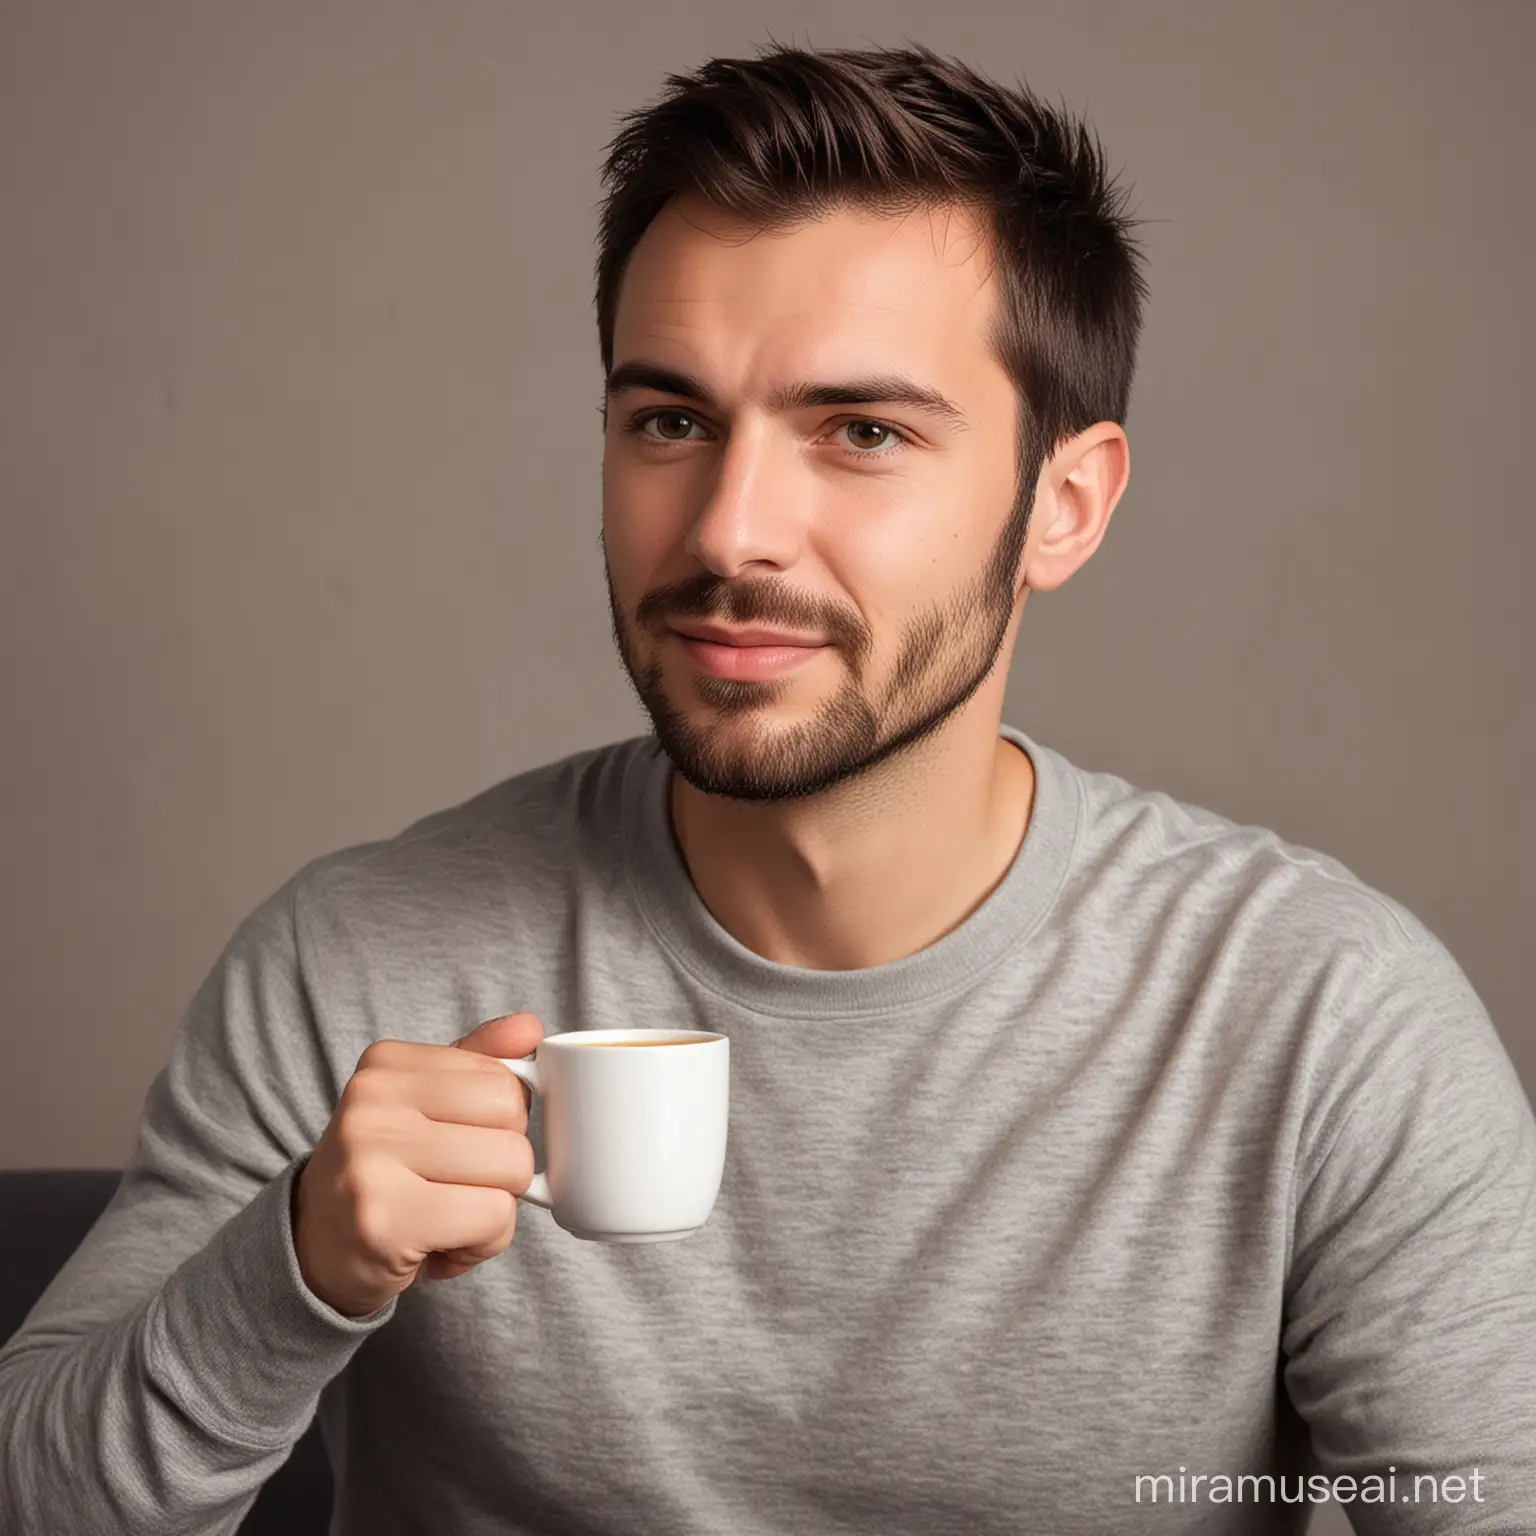 Man Enjoying Morning Coffee in Cozy Cafe Atmosphere